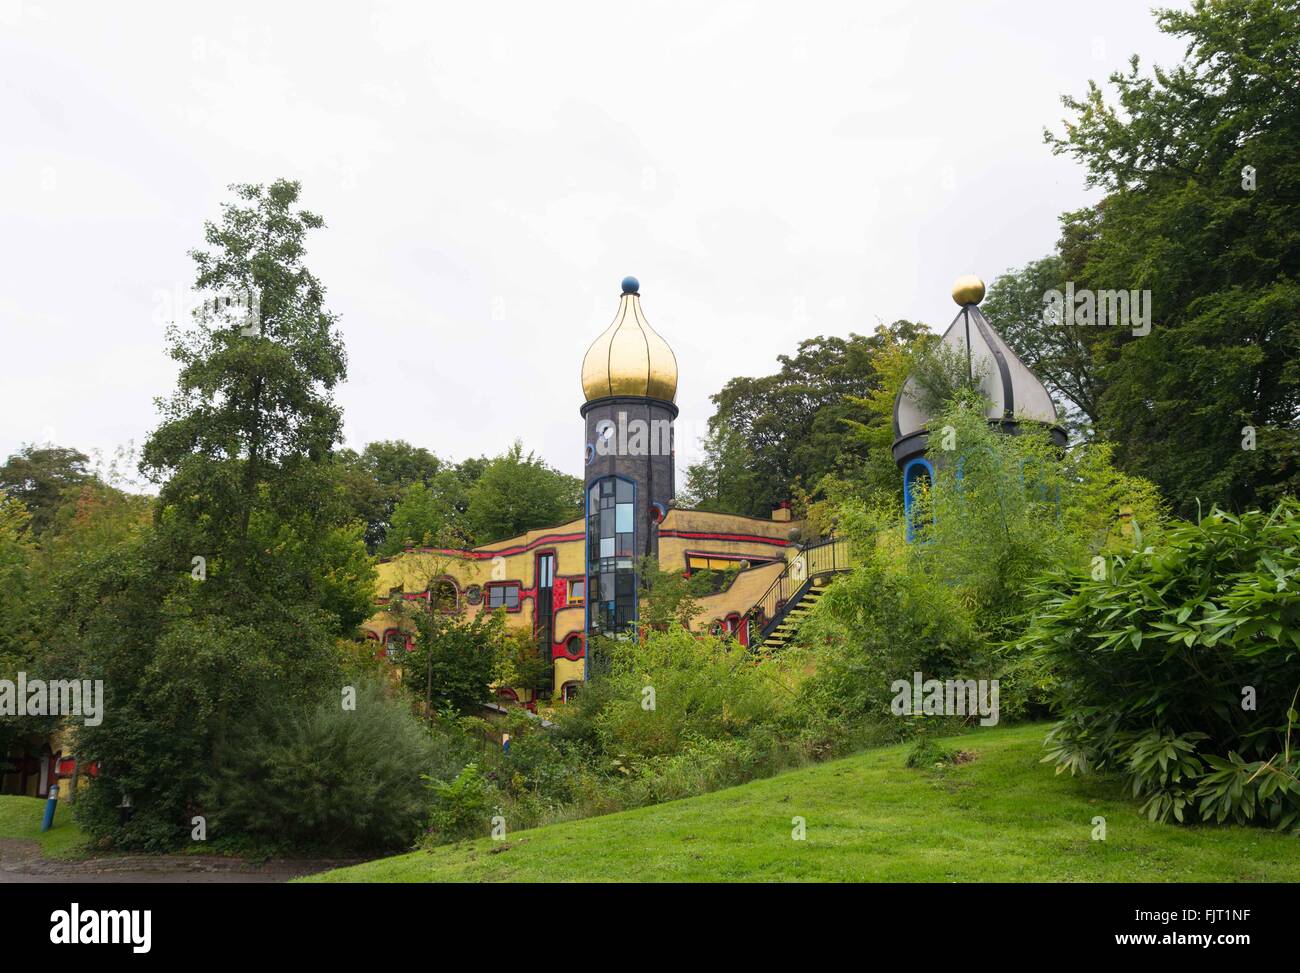 ESSEN, Alemania - 13 de agosto de 2015: el exterior de la casa de Ronald McDonald en el Grugapark Foto de stock